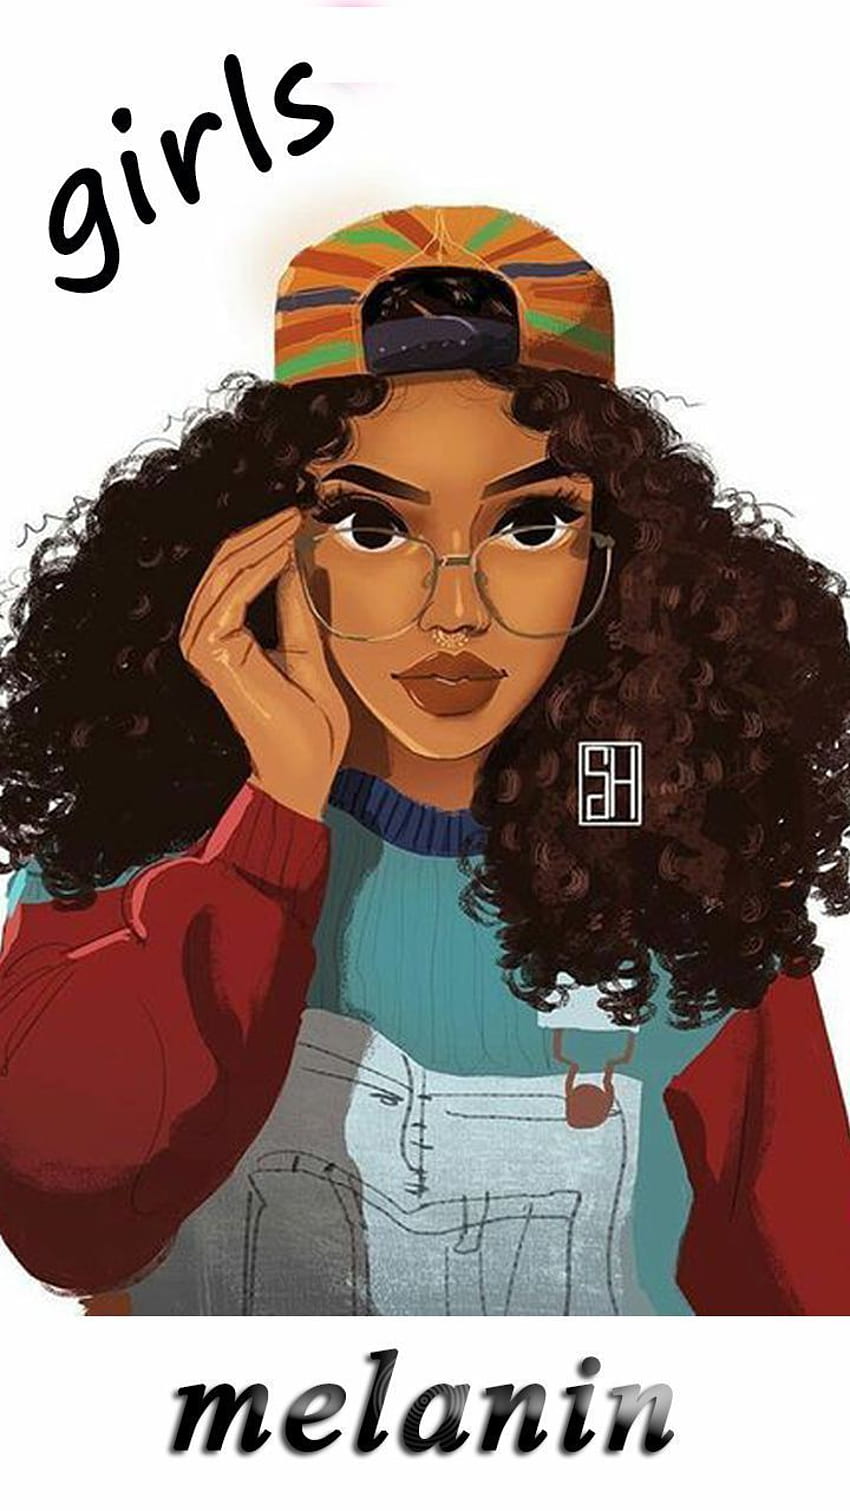 Cute Black girls for girls - Android app. Black girl art, Black girl magic art, Black girls HD phone wallpaper